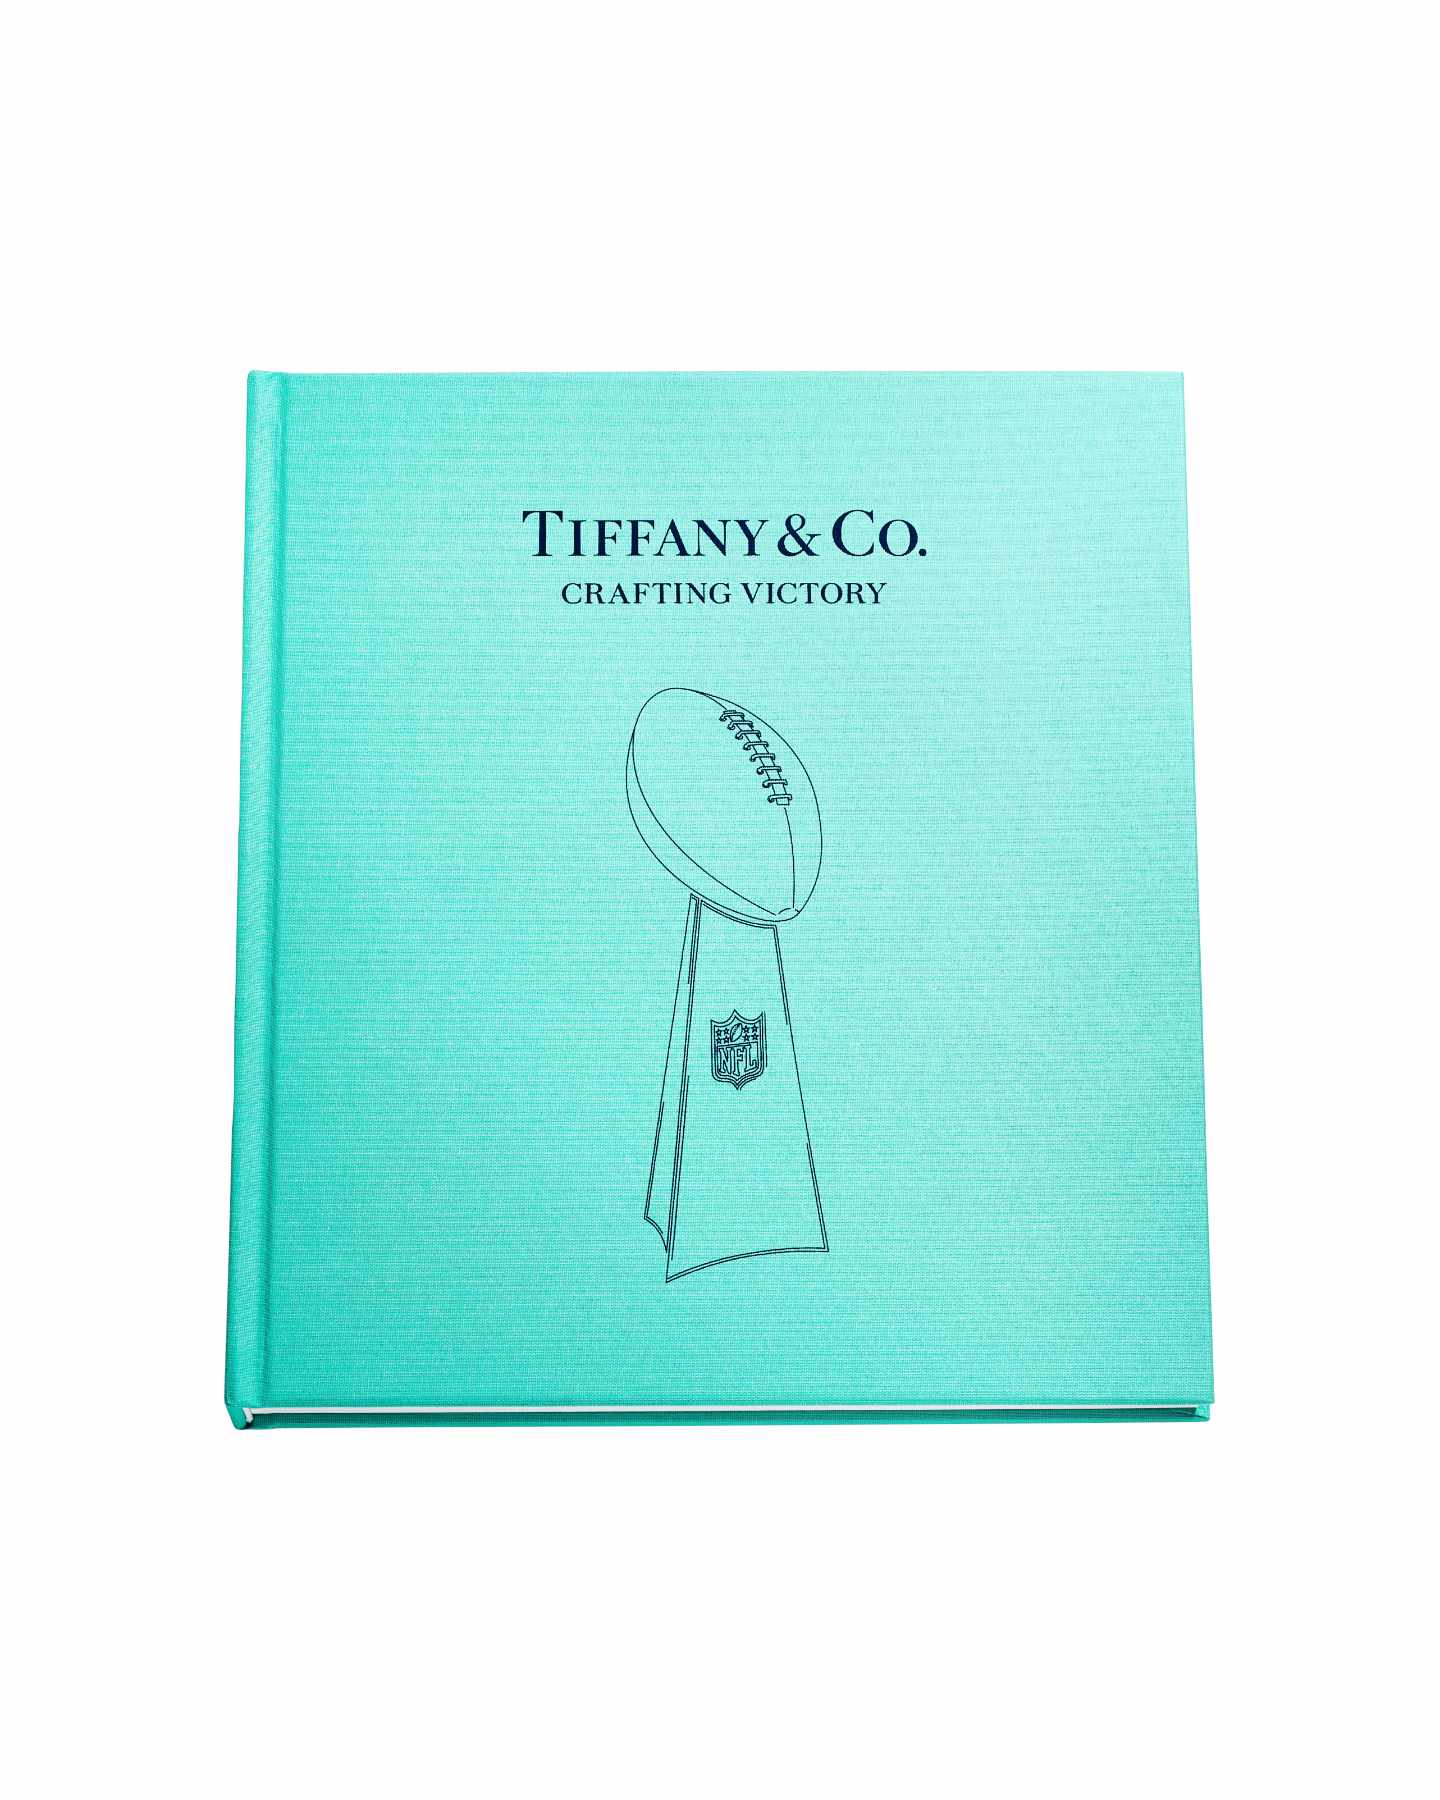 Tiffany & Co.: Tiffany & Co. Congratulates The Milwaukee Bucks